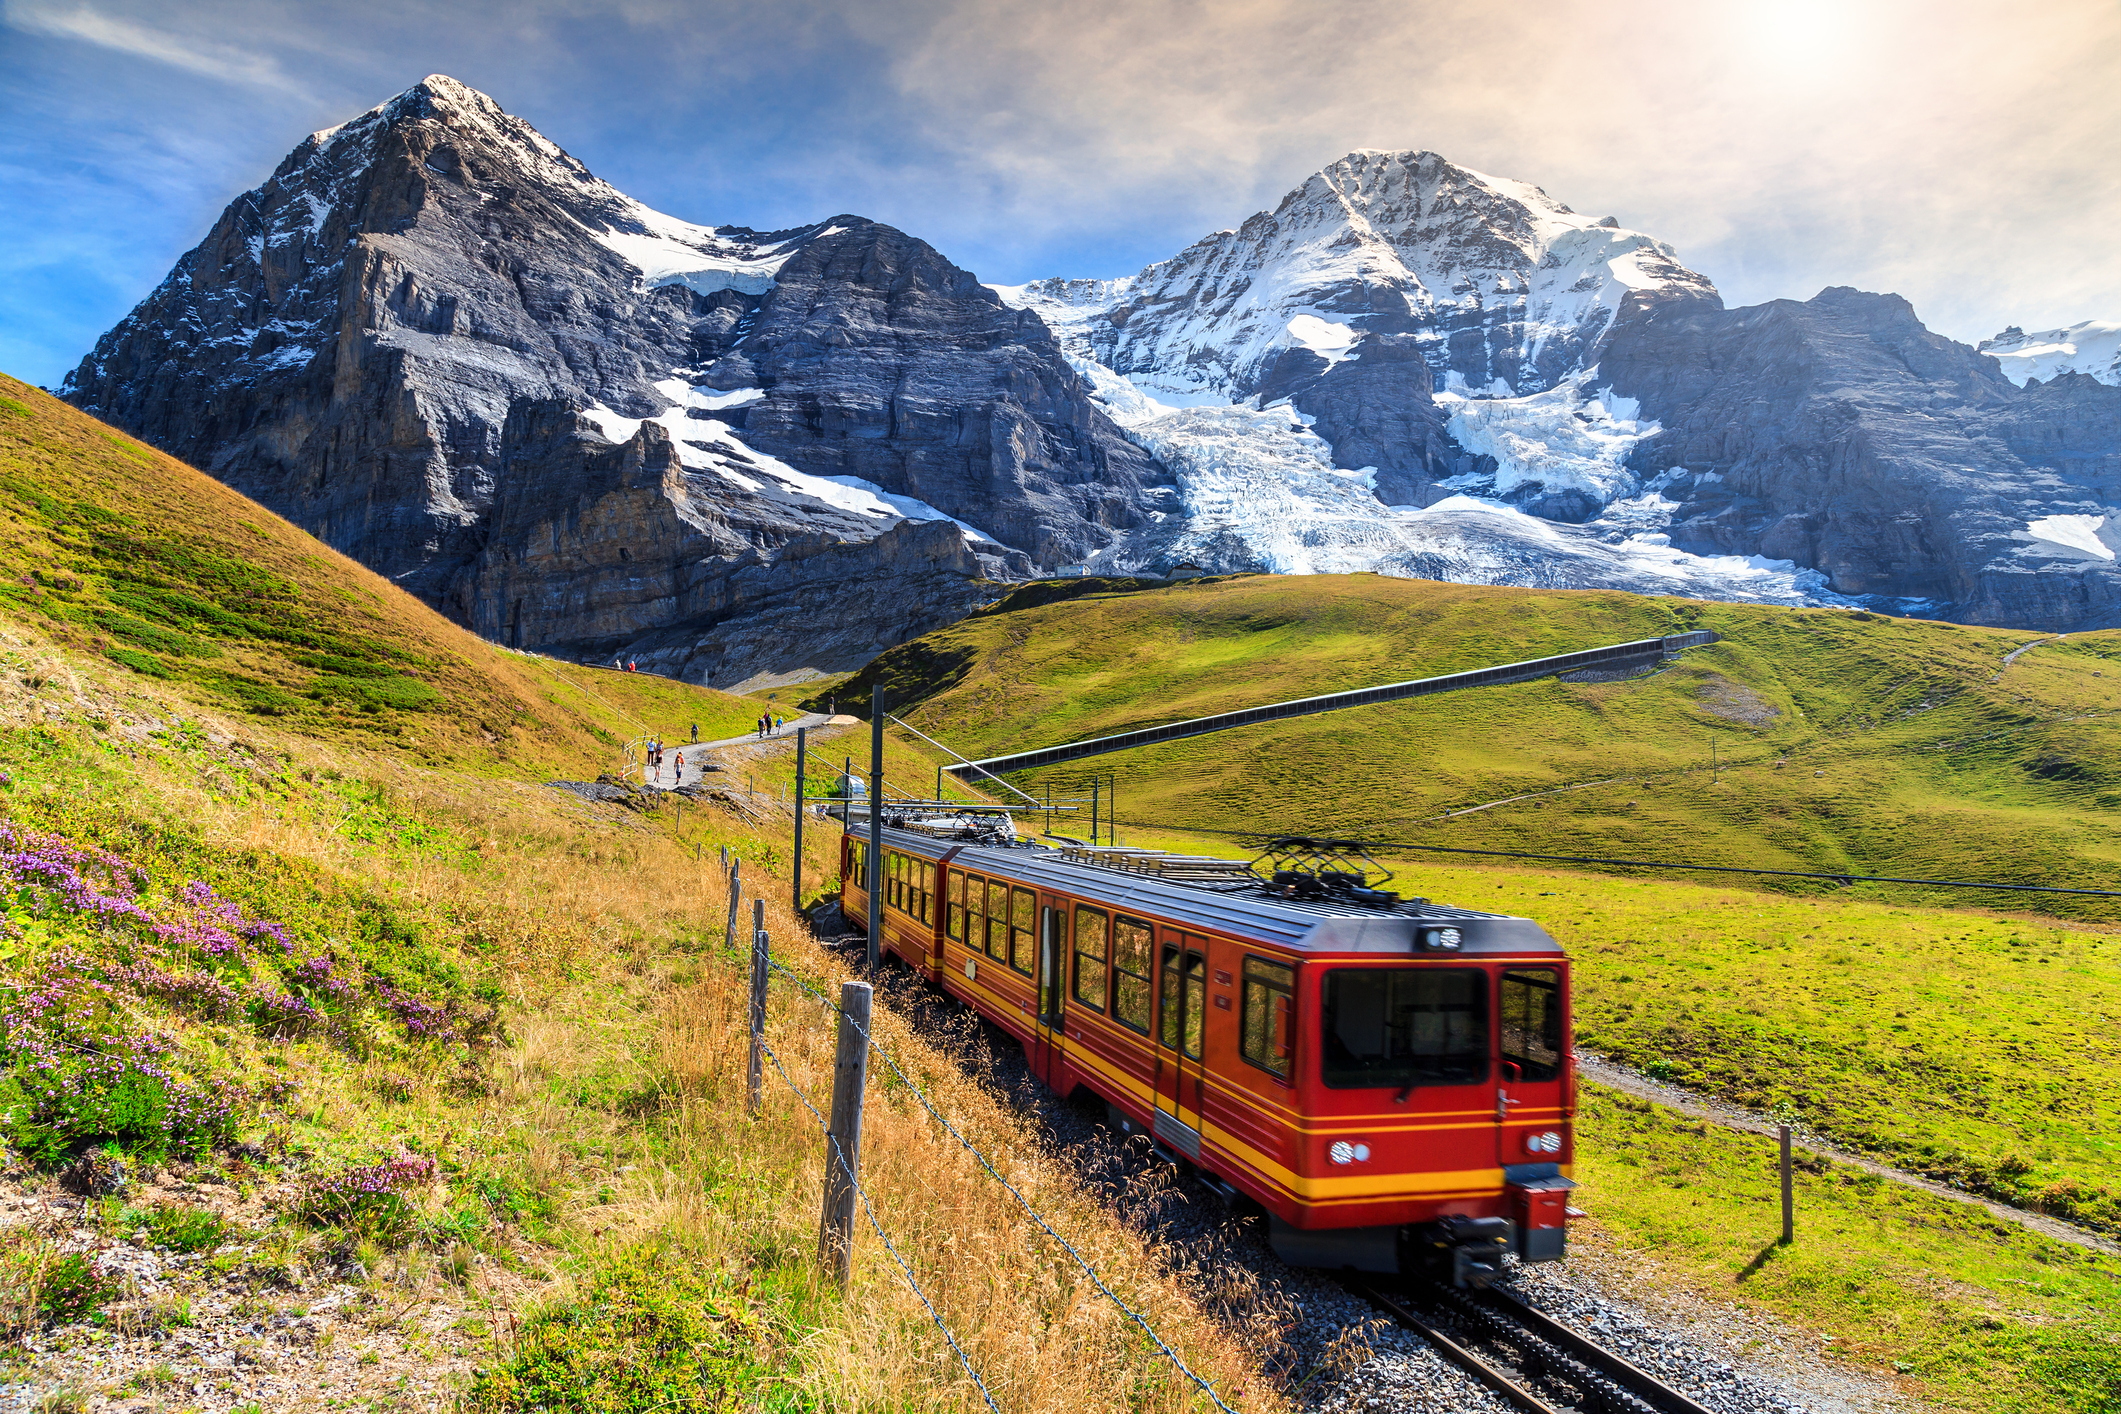 Famoso tren turístico rojo eléctrico que baja de la estación de Jungfraujoch en Kleine Scheidegg, Oberland Bernés, Suiza.